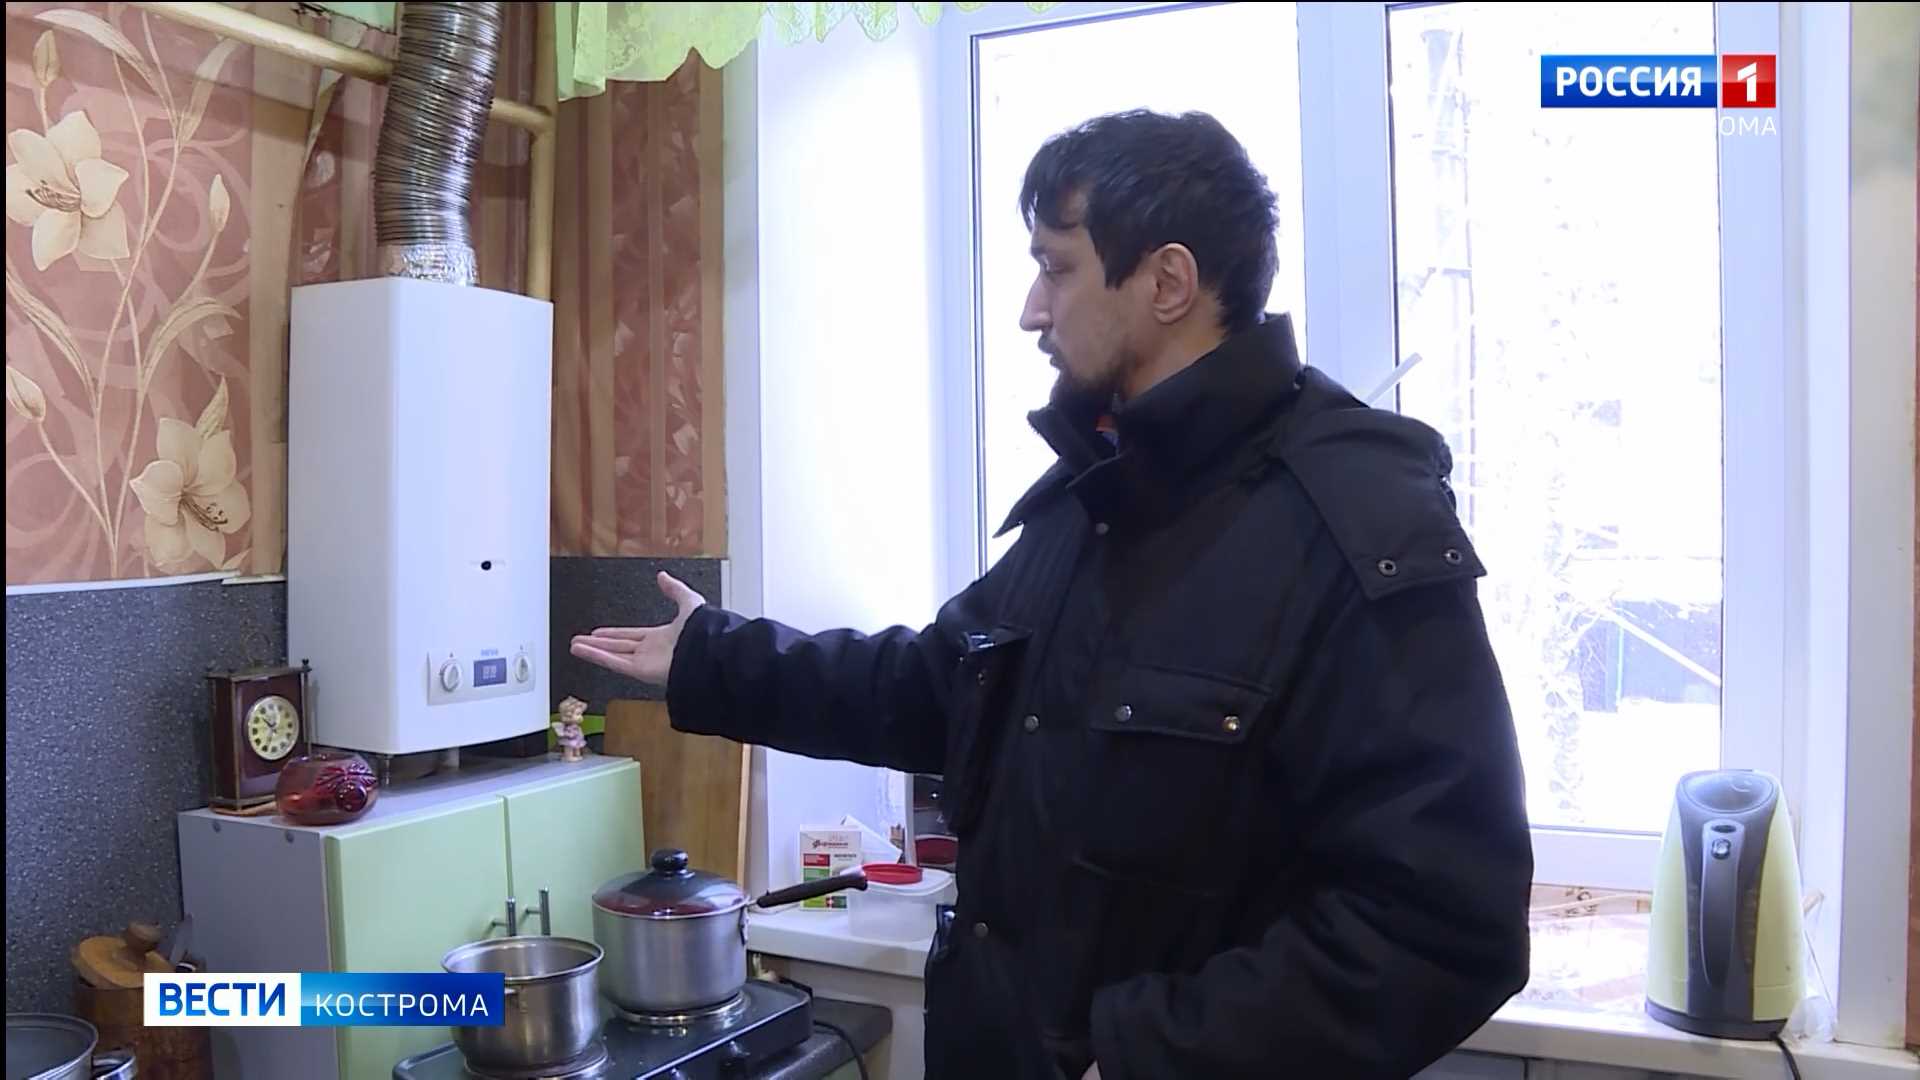 Многоэтажный дом в Костроме из-за угрозы массового отравления отключили от газа